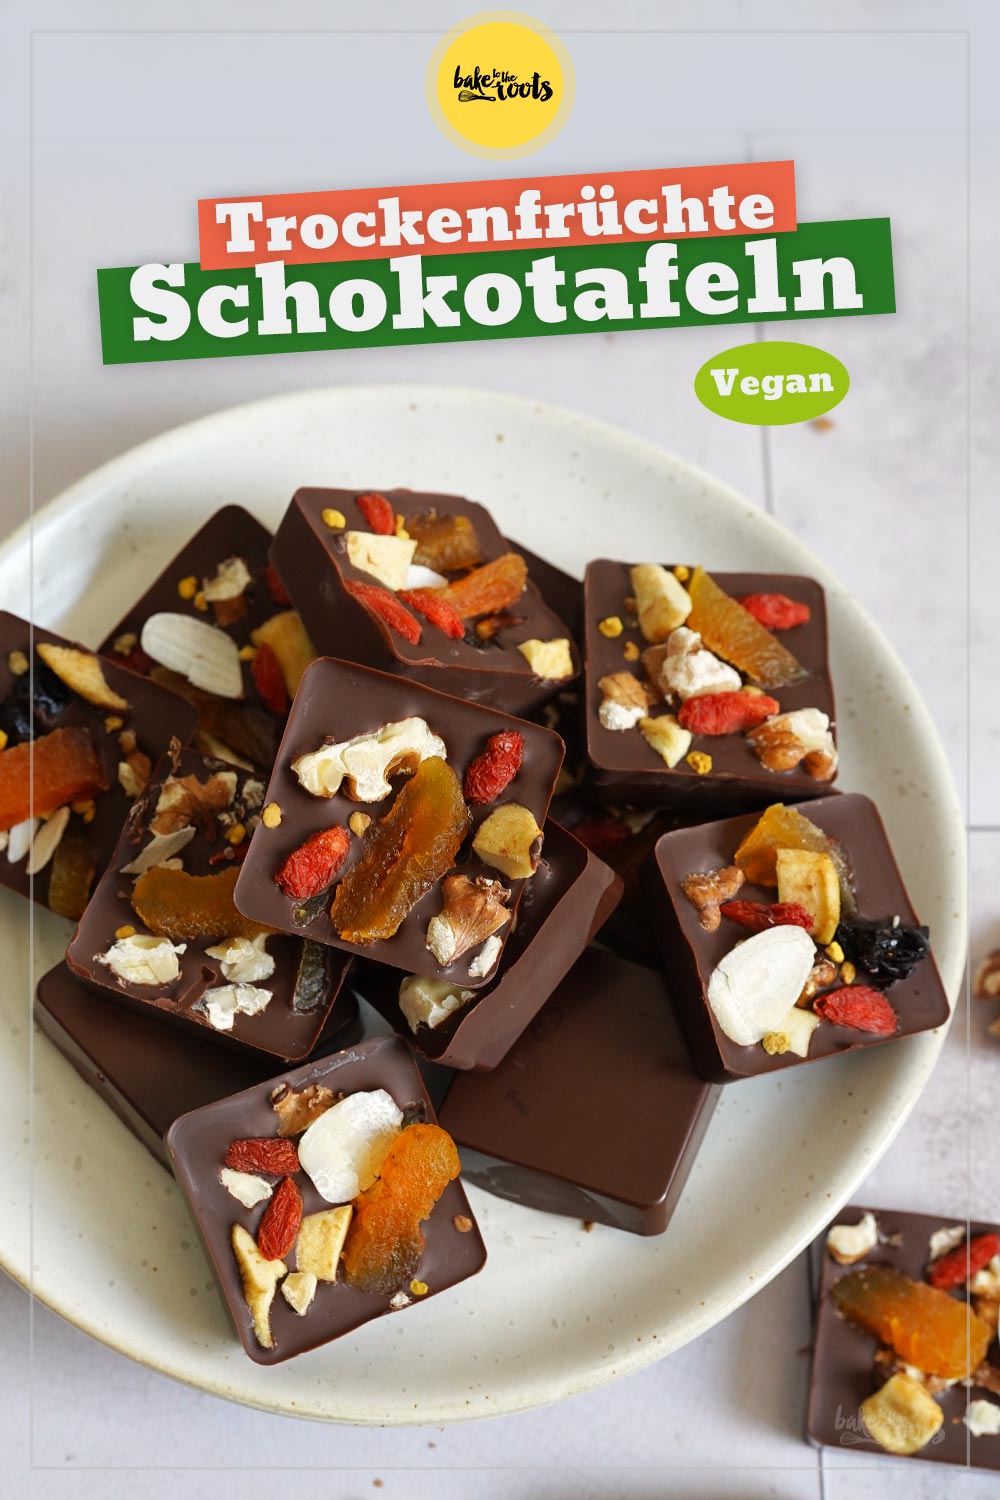 Trockenfrüchte Schokotafeln | Bake to the roots